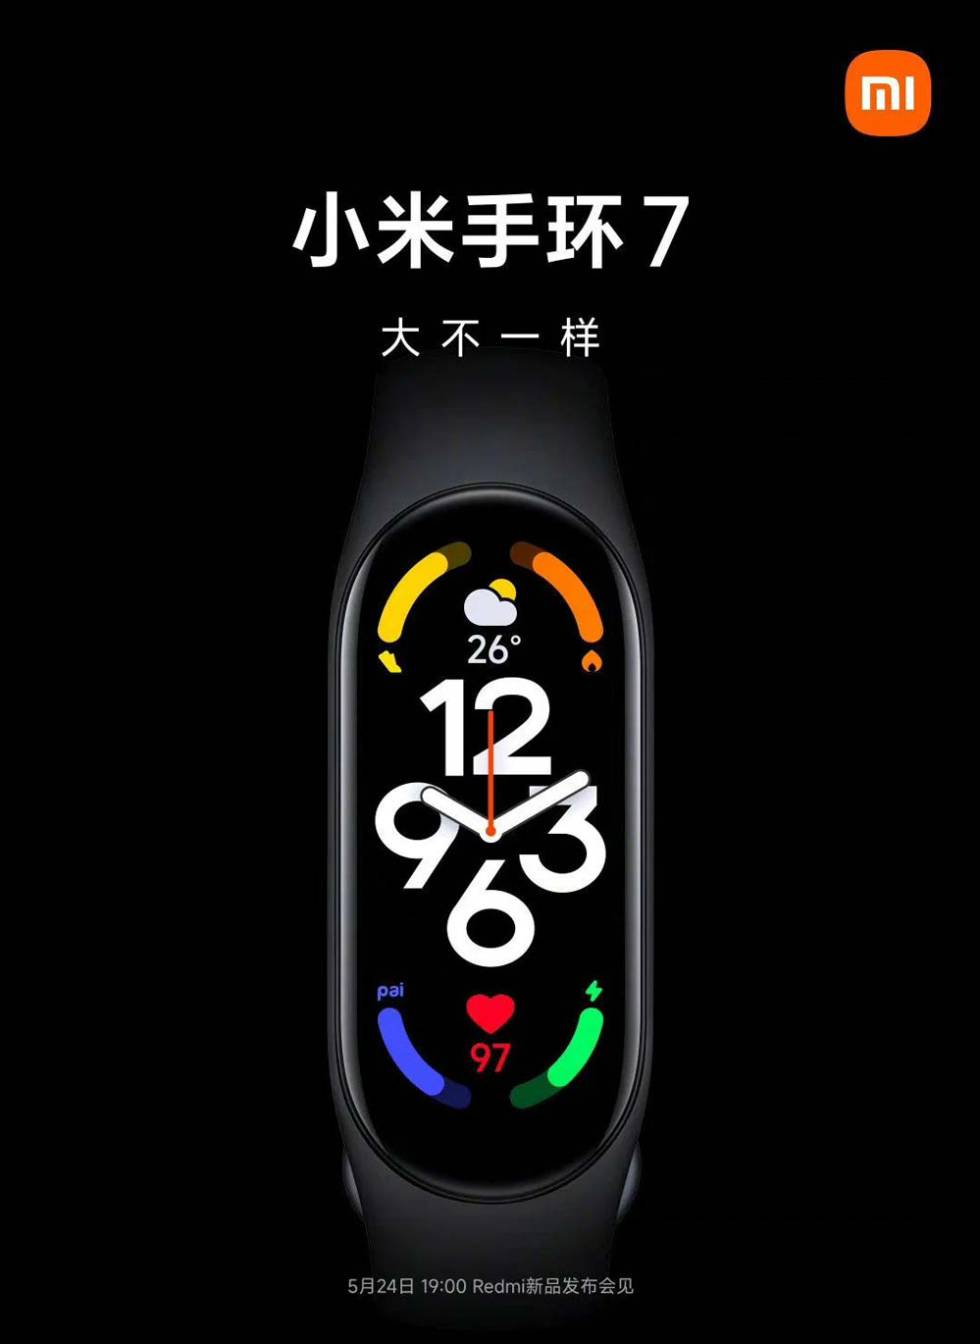 Ya hay fecha para la presentación de la Xiaomi Mi Band 7, ¿qué